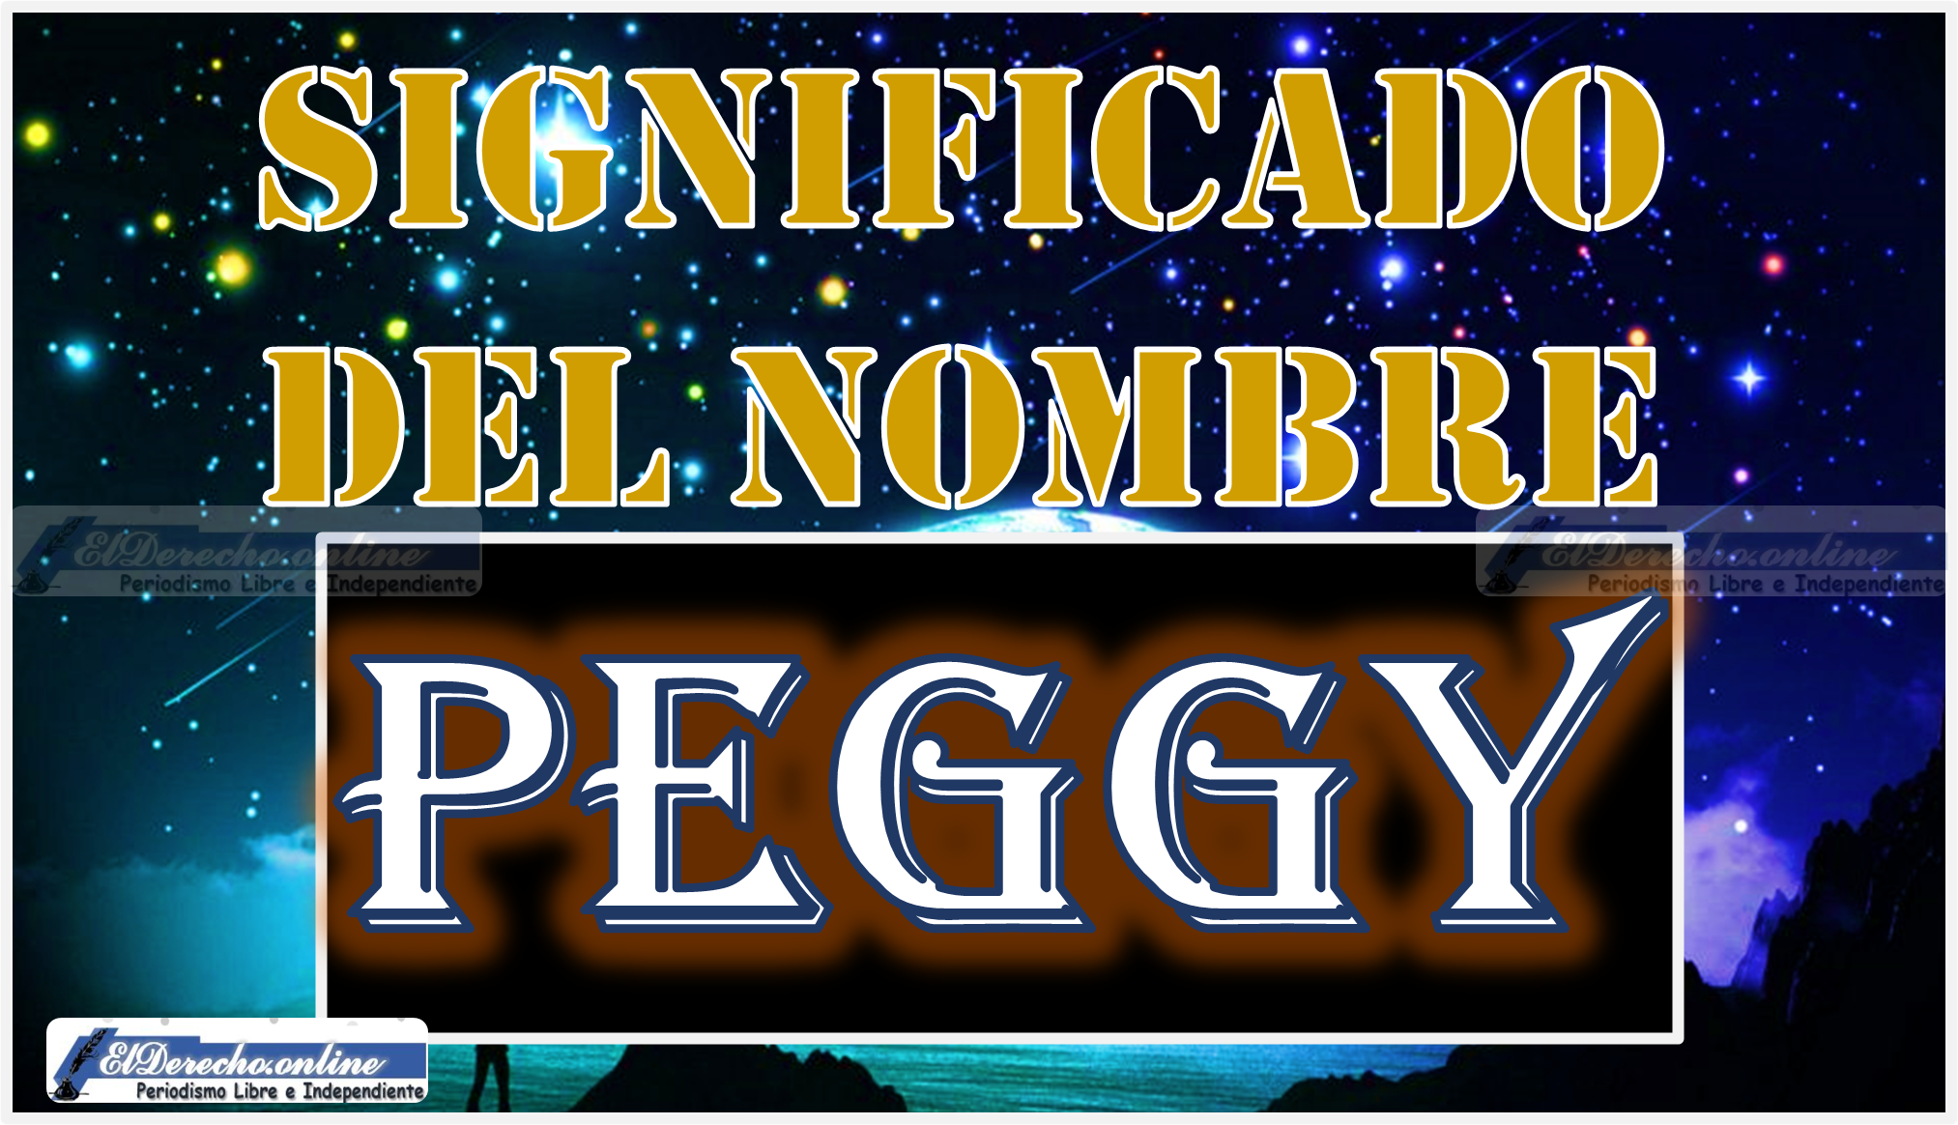 Significado del nombre Peggy, su origen y más